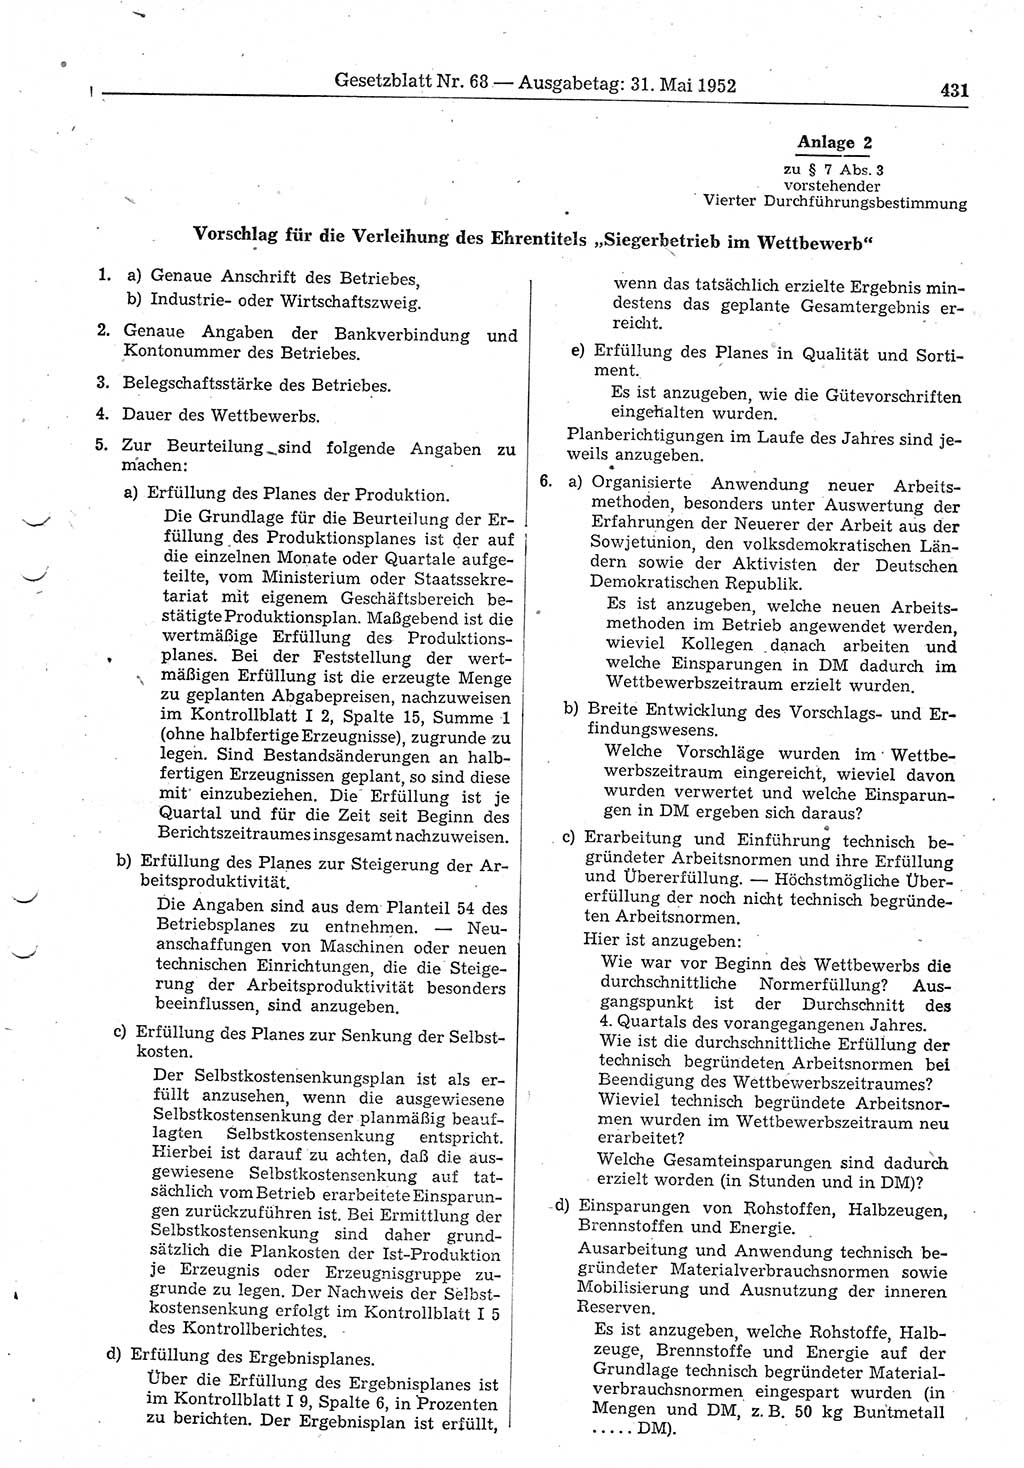 Gesetzblatt (GBl.) der Deutschen Demokratischen Republik (DDR) 1952, Seite 431 (GBl. DDR 1952, S. 431)